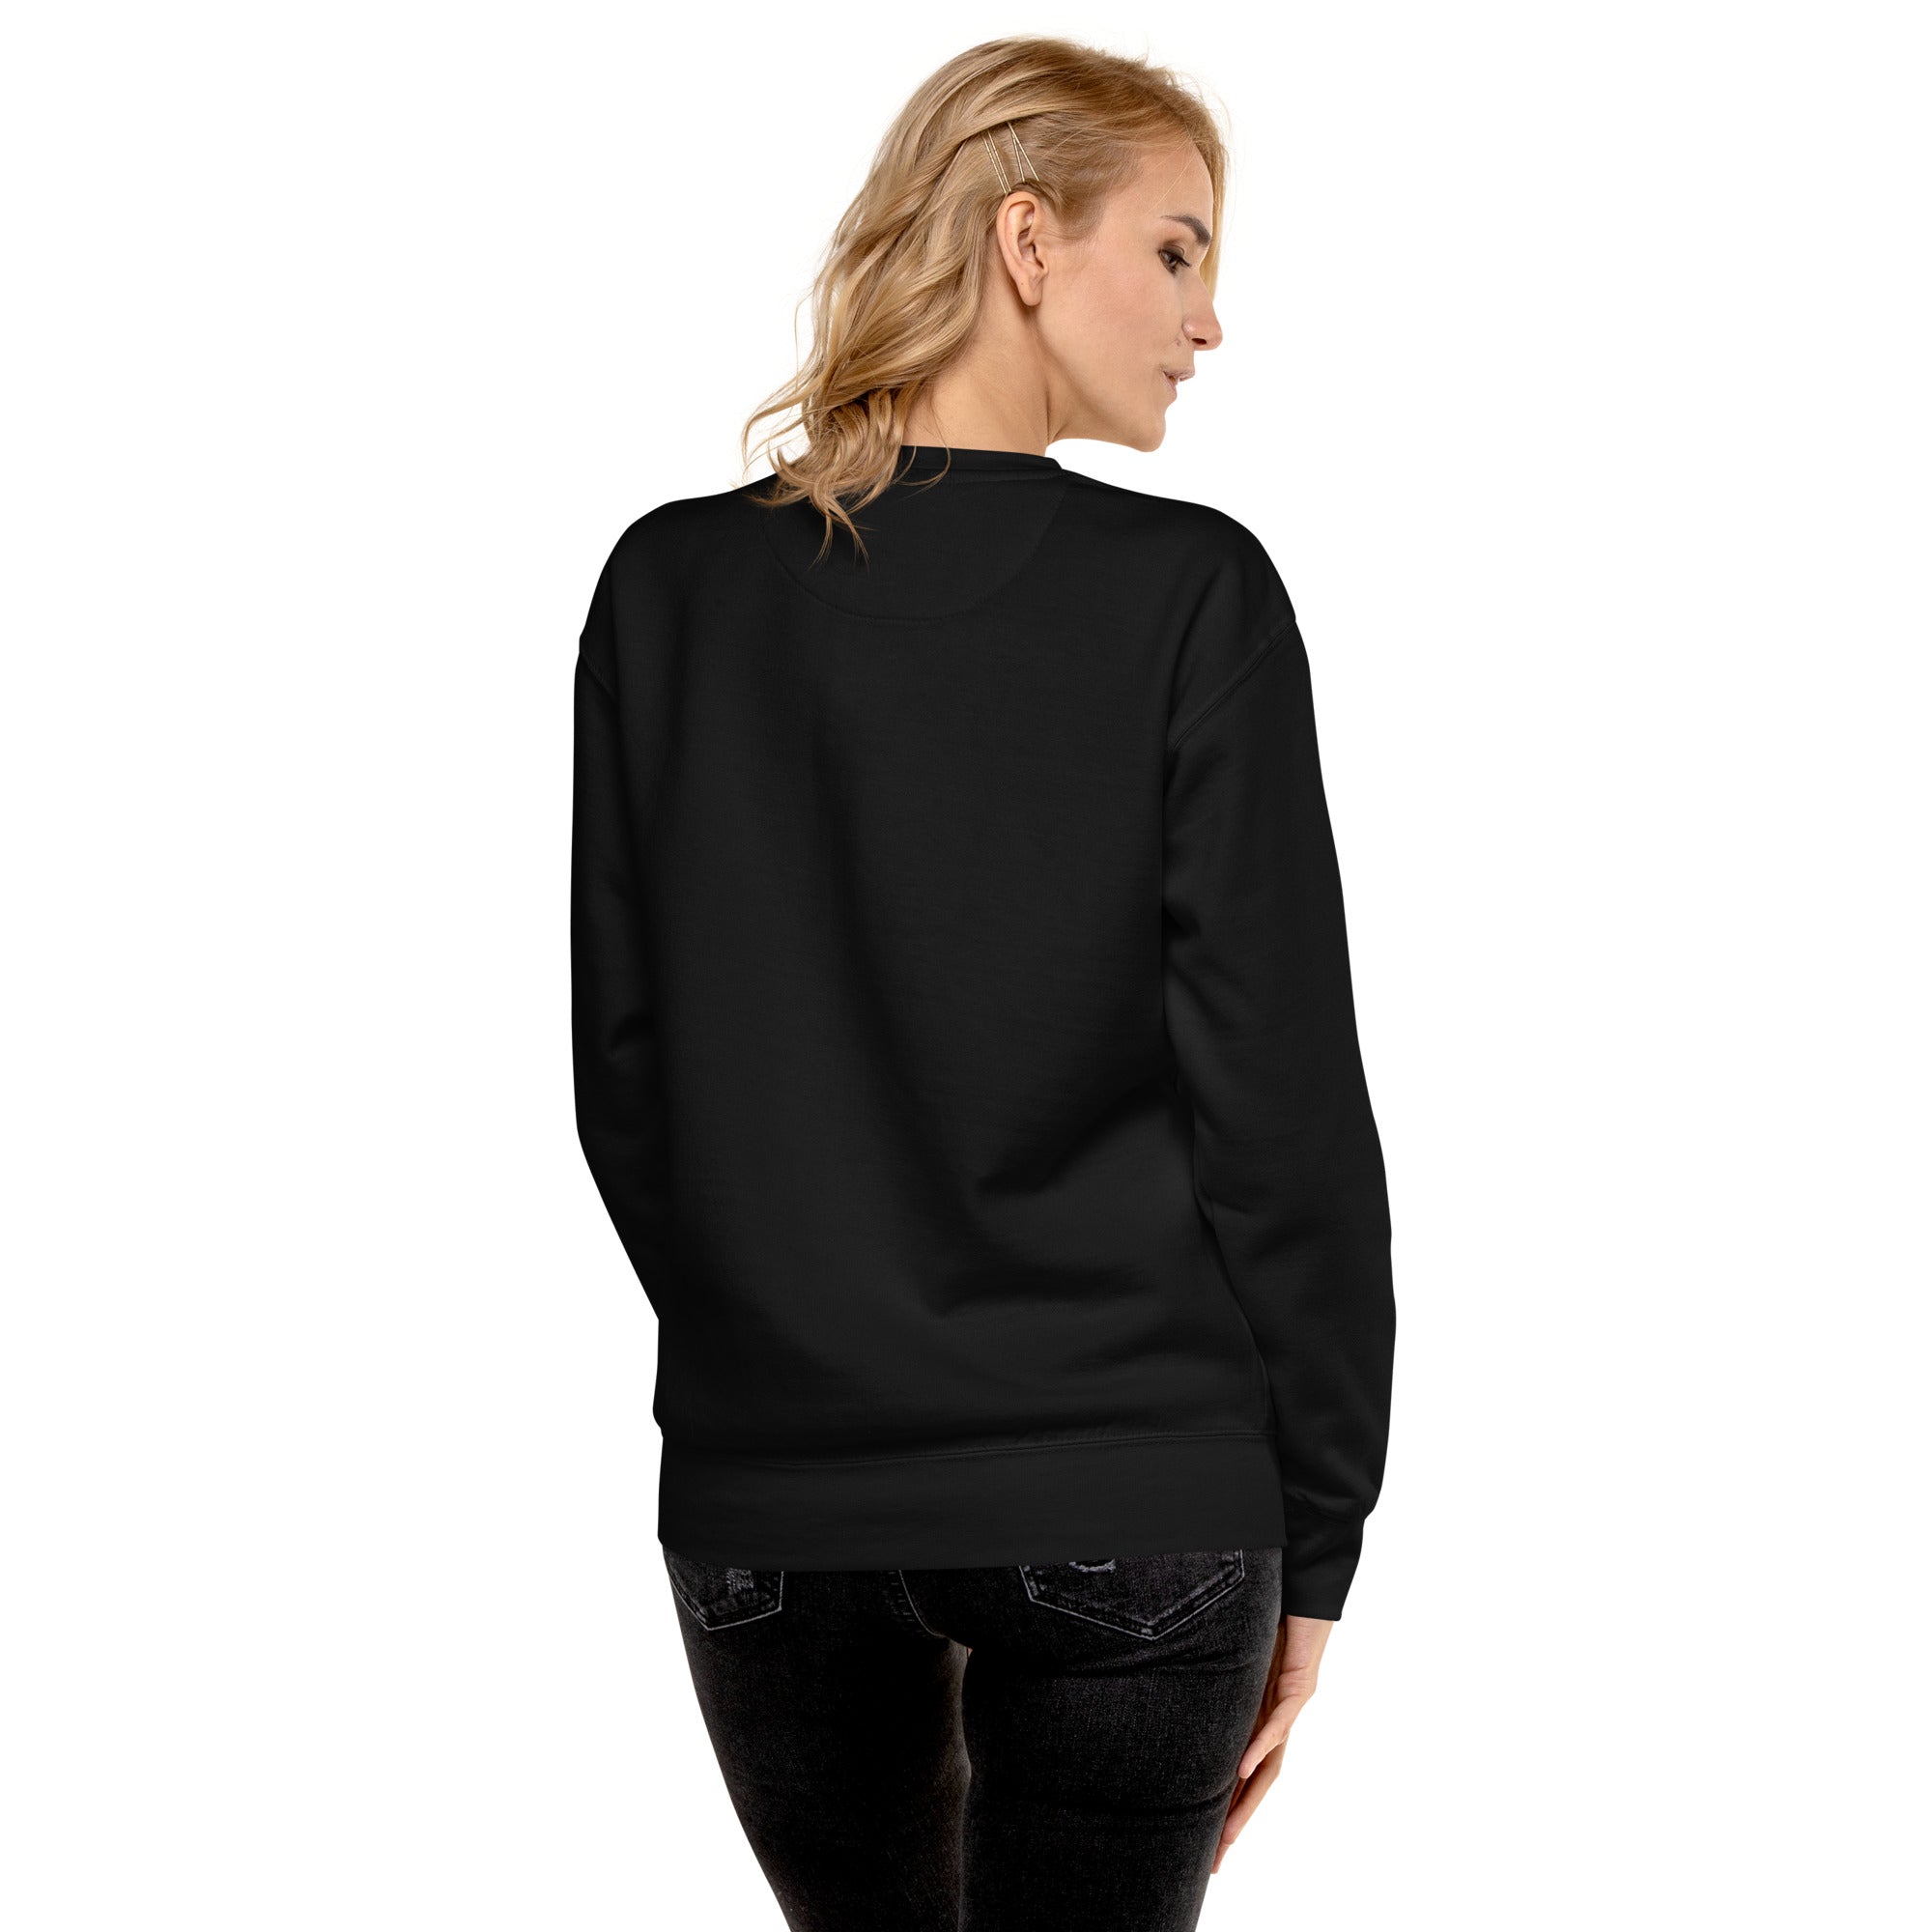 Alien Model - Premium Sweatshirt